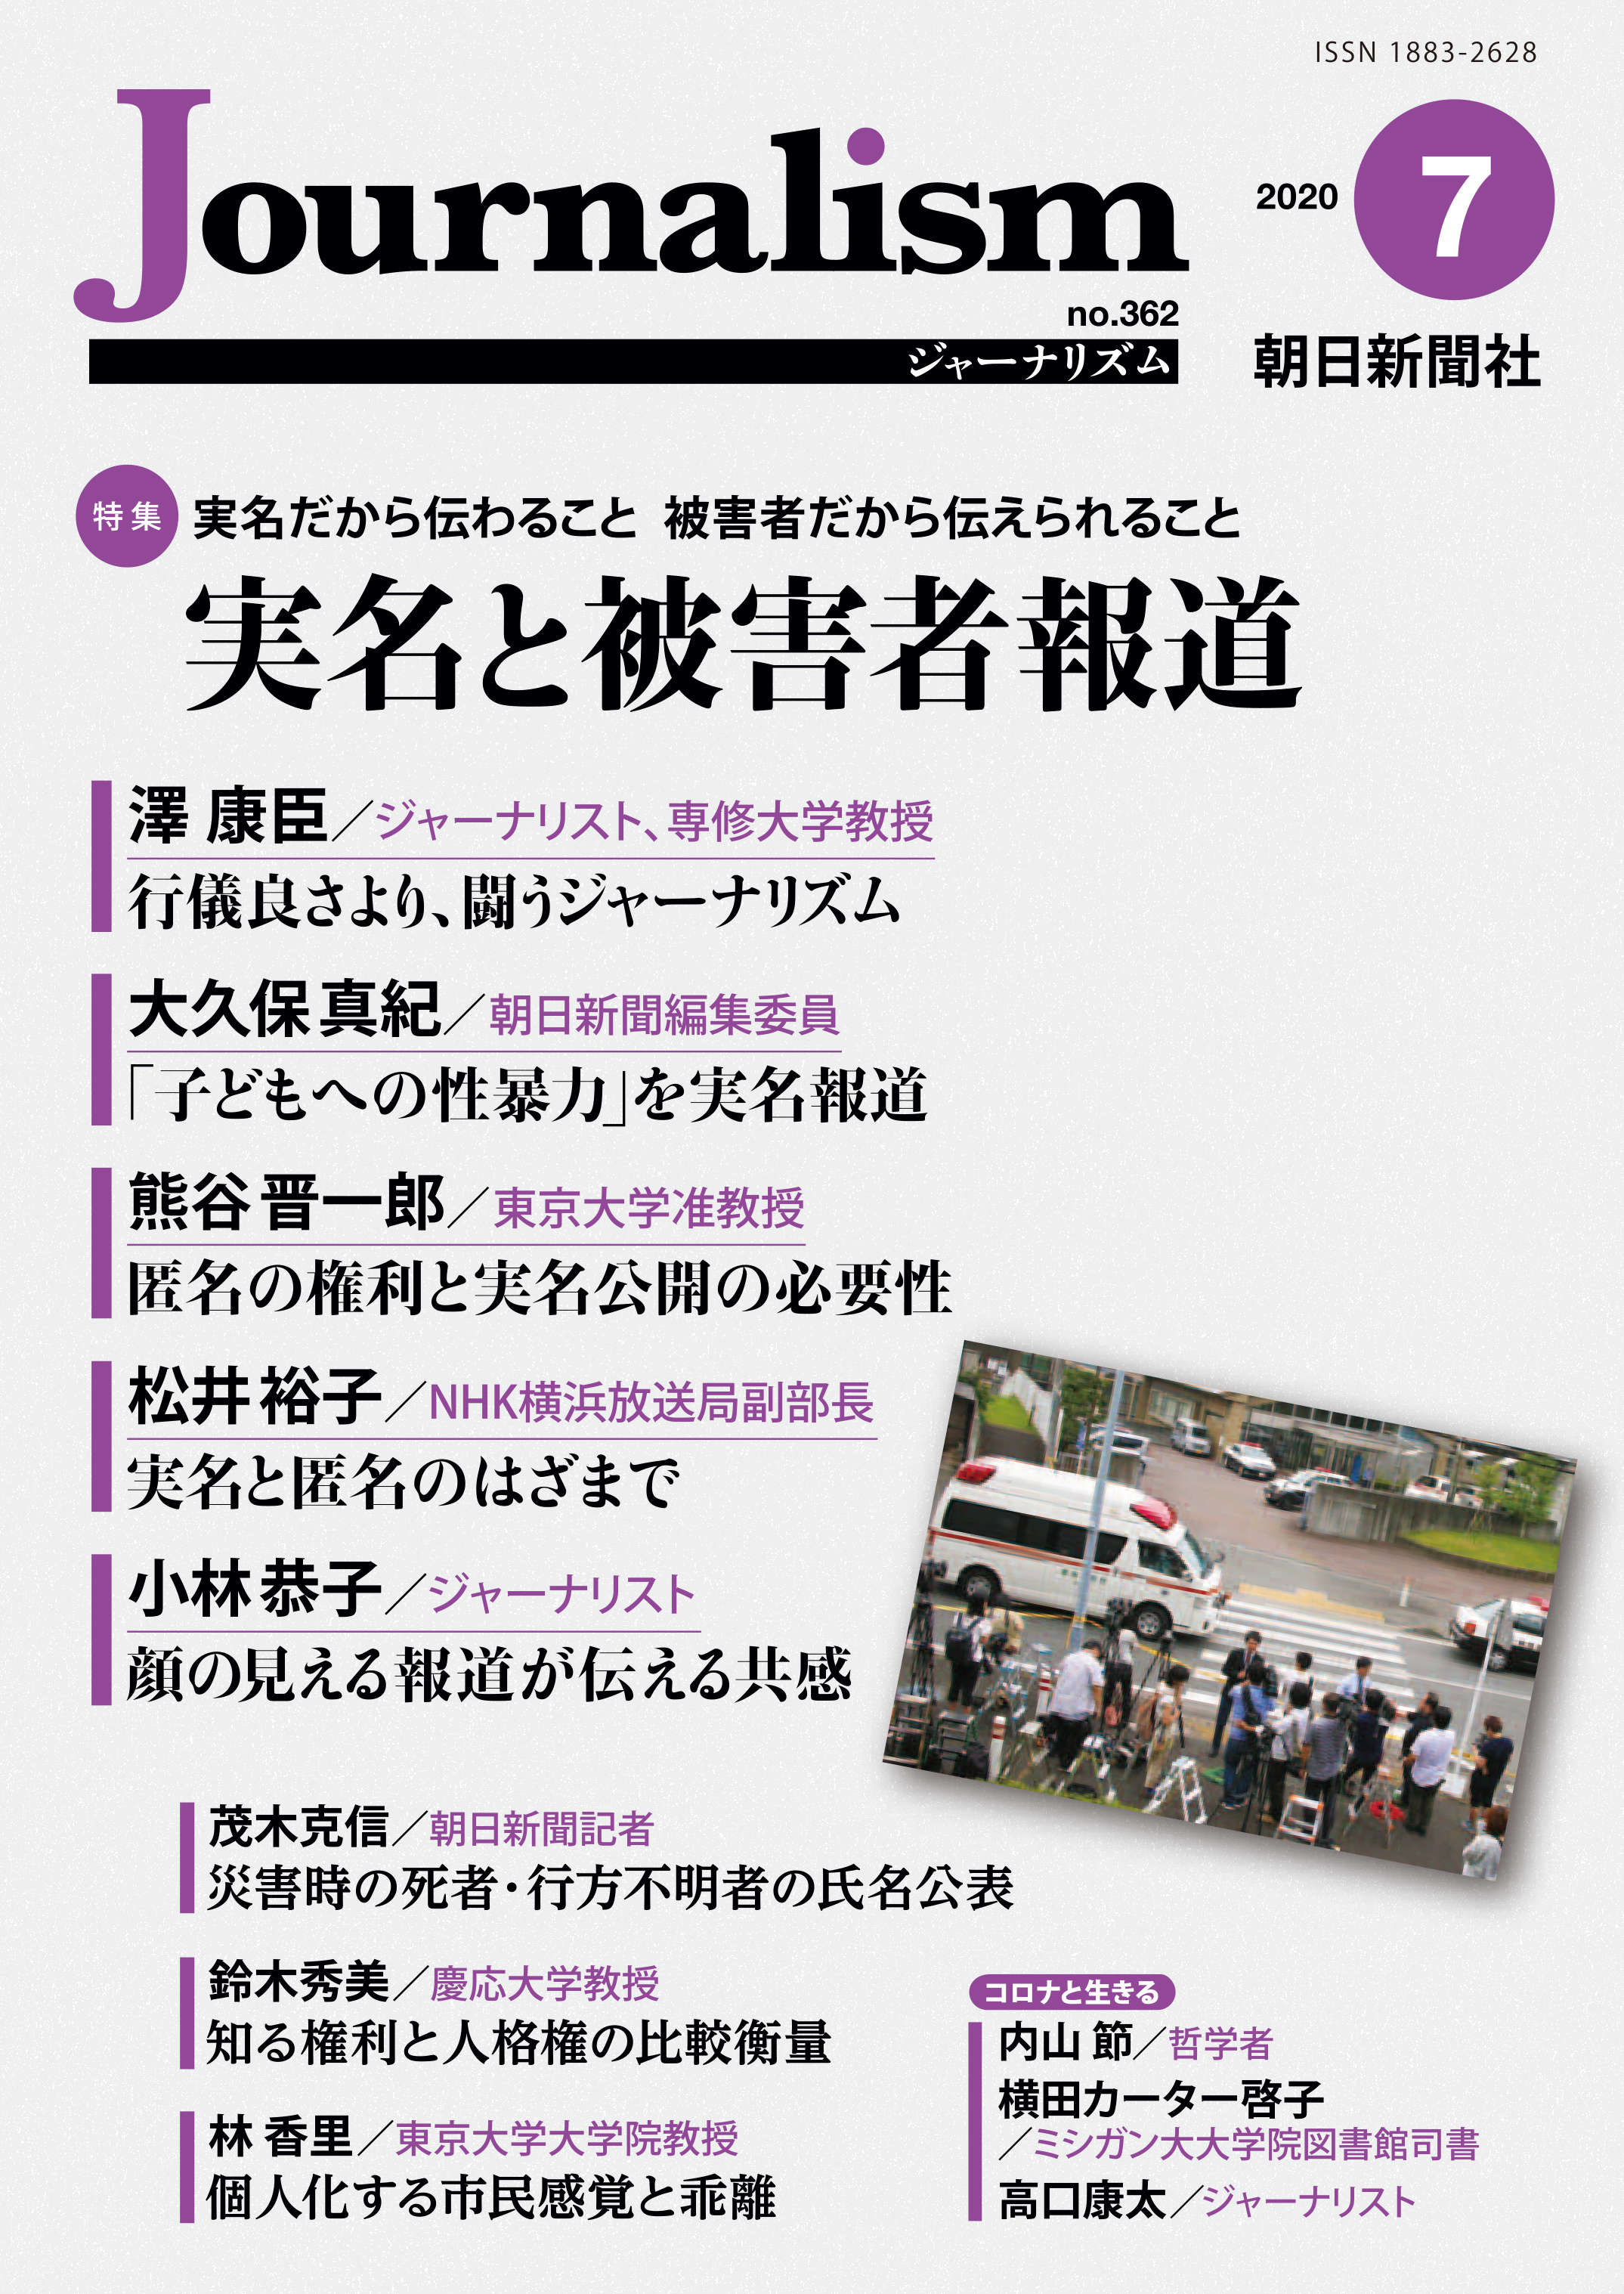 特集 実名と被害者報道 株式会社朝日新聞社のプレスリリース